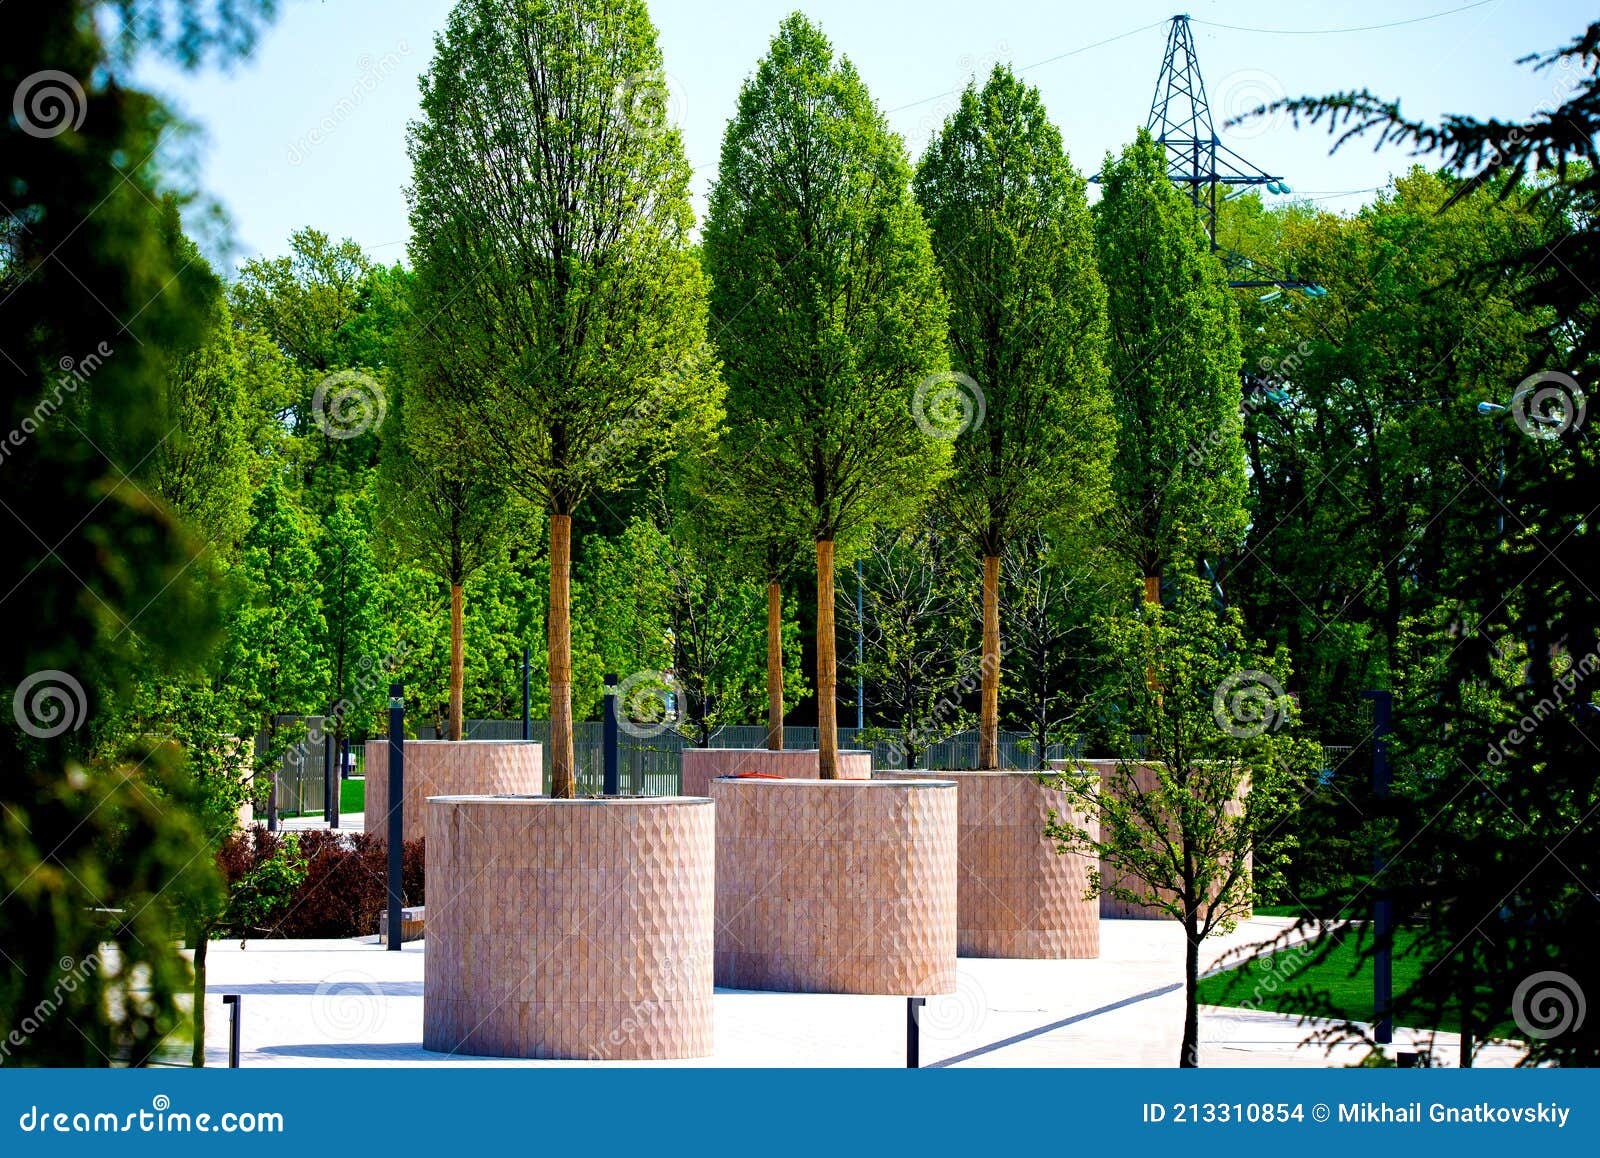 Grandes árboles En Macetas De Jardín De Piedra Redonda En El Parque Público  Moderno Foto de archivo - Imagen de arbusto, verde: 213310854